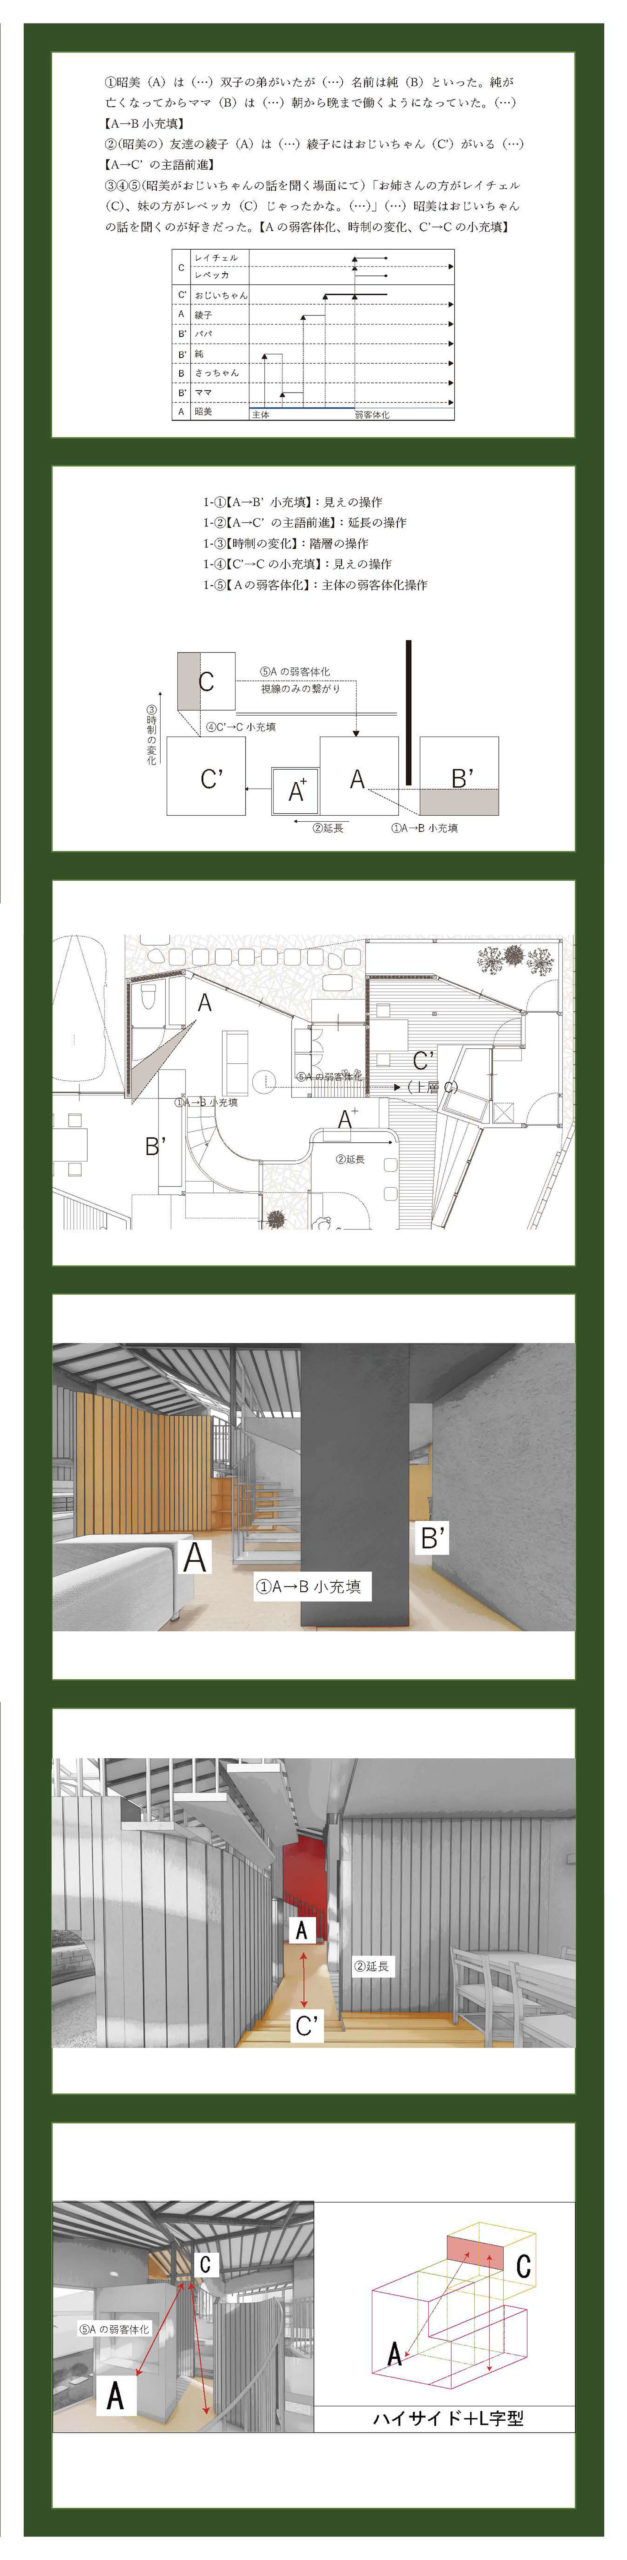 小説構造を応用した建築の提案 -梨木香歩『裏庭』の分析を通して--3